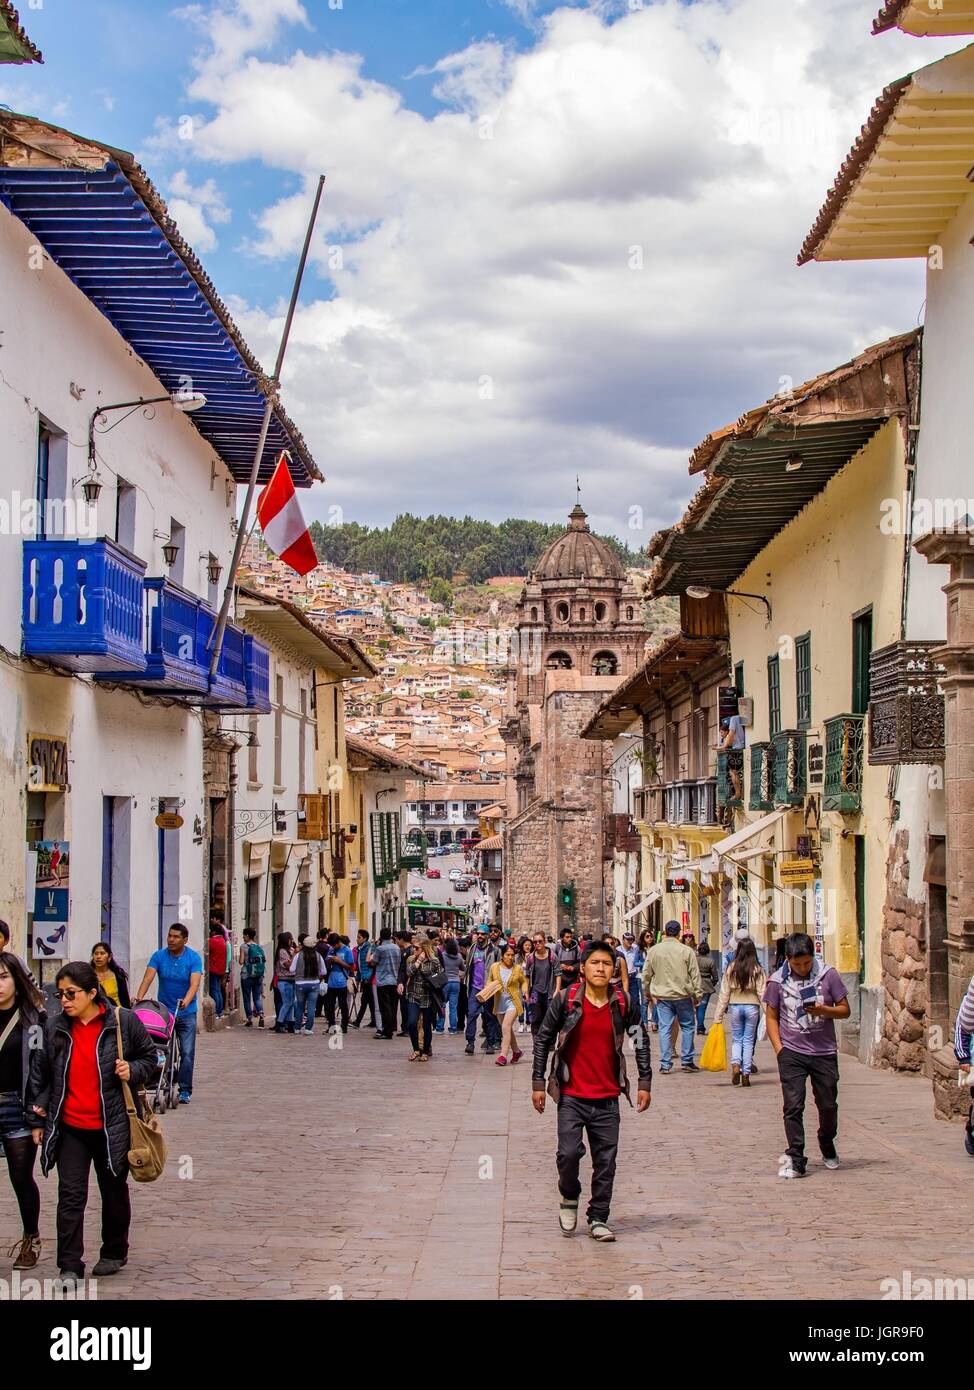 Cusco Peru street with people and a Peruvian flag in Cuzco Peru, South America. Stock Photo